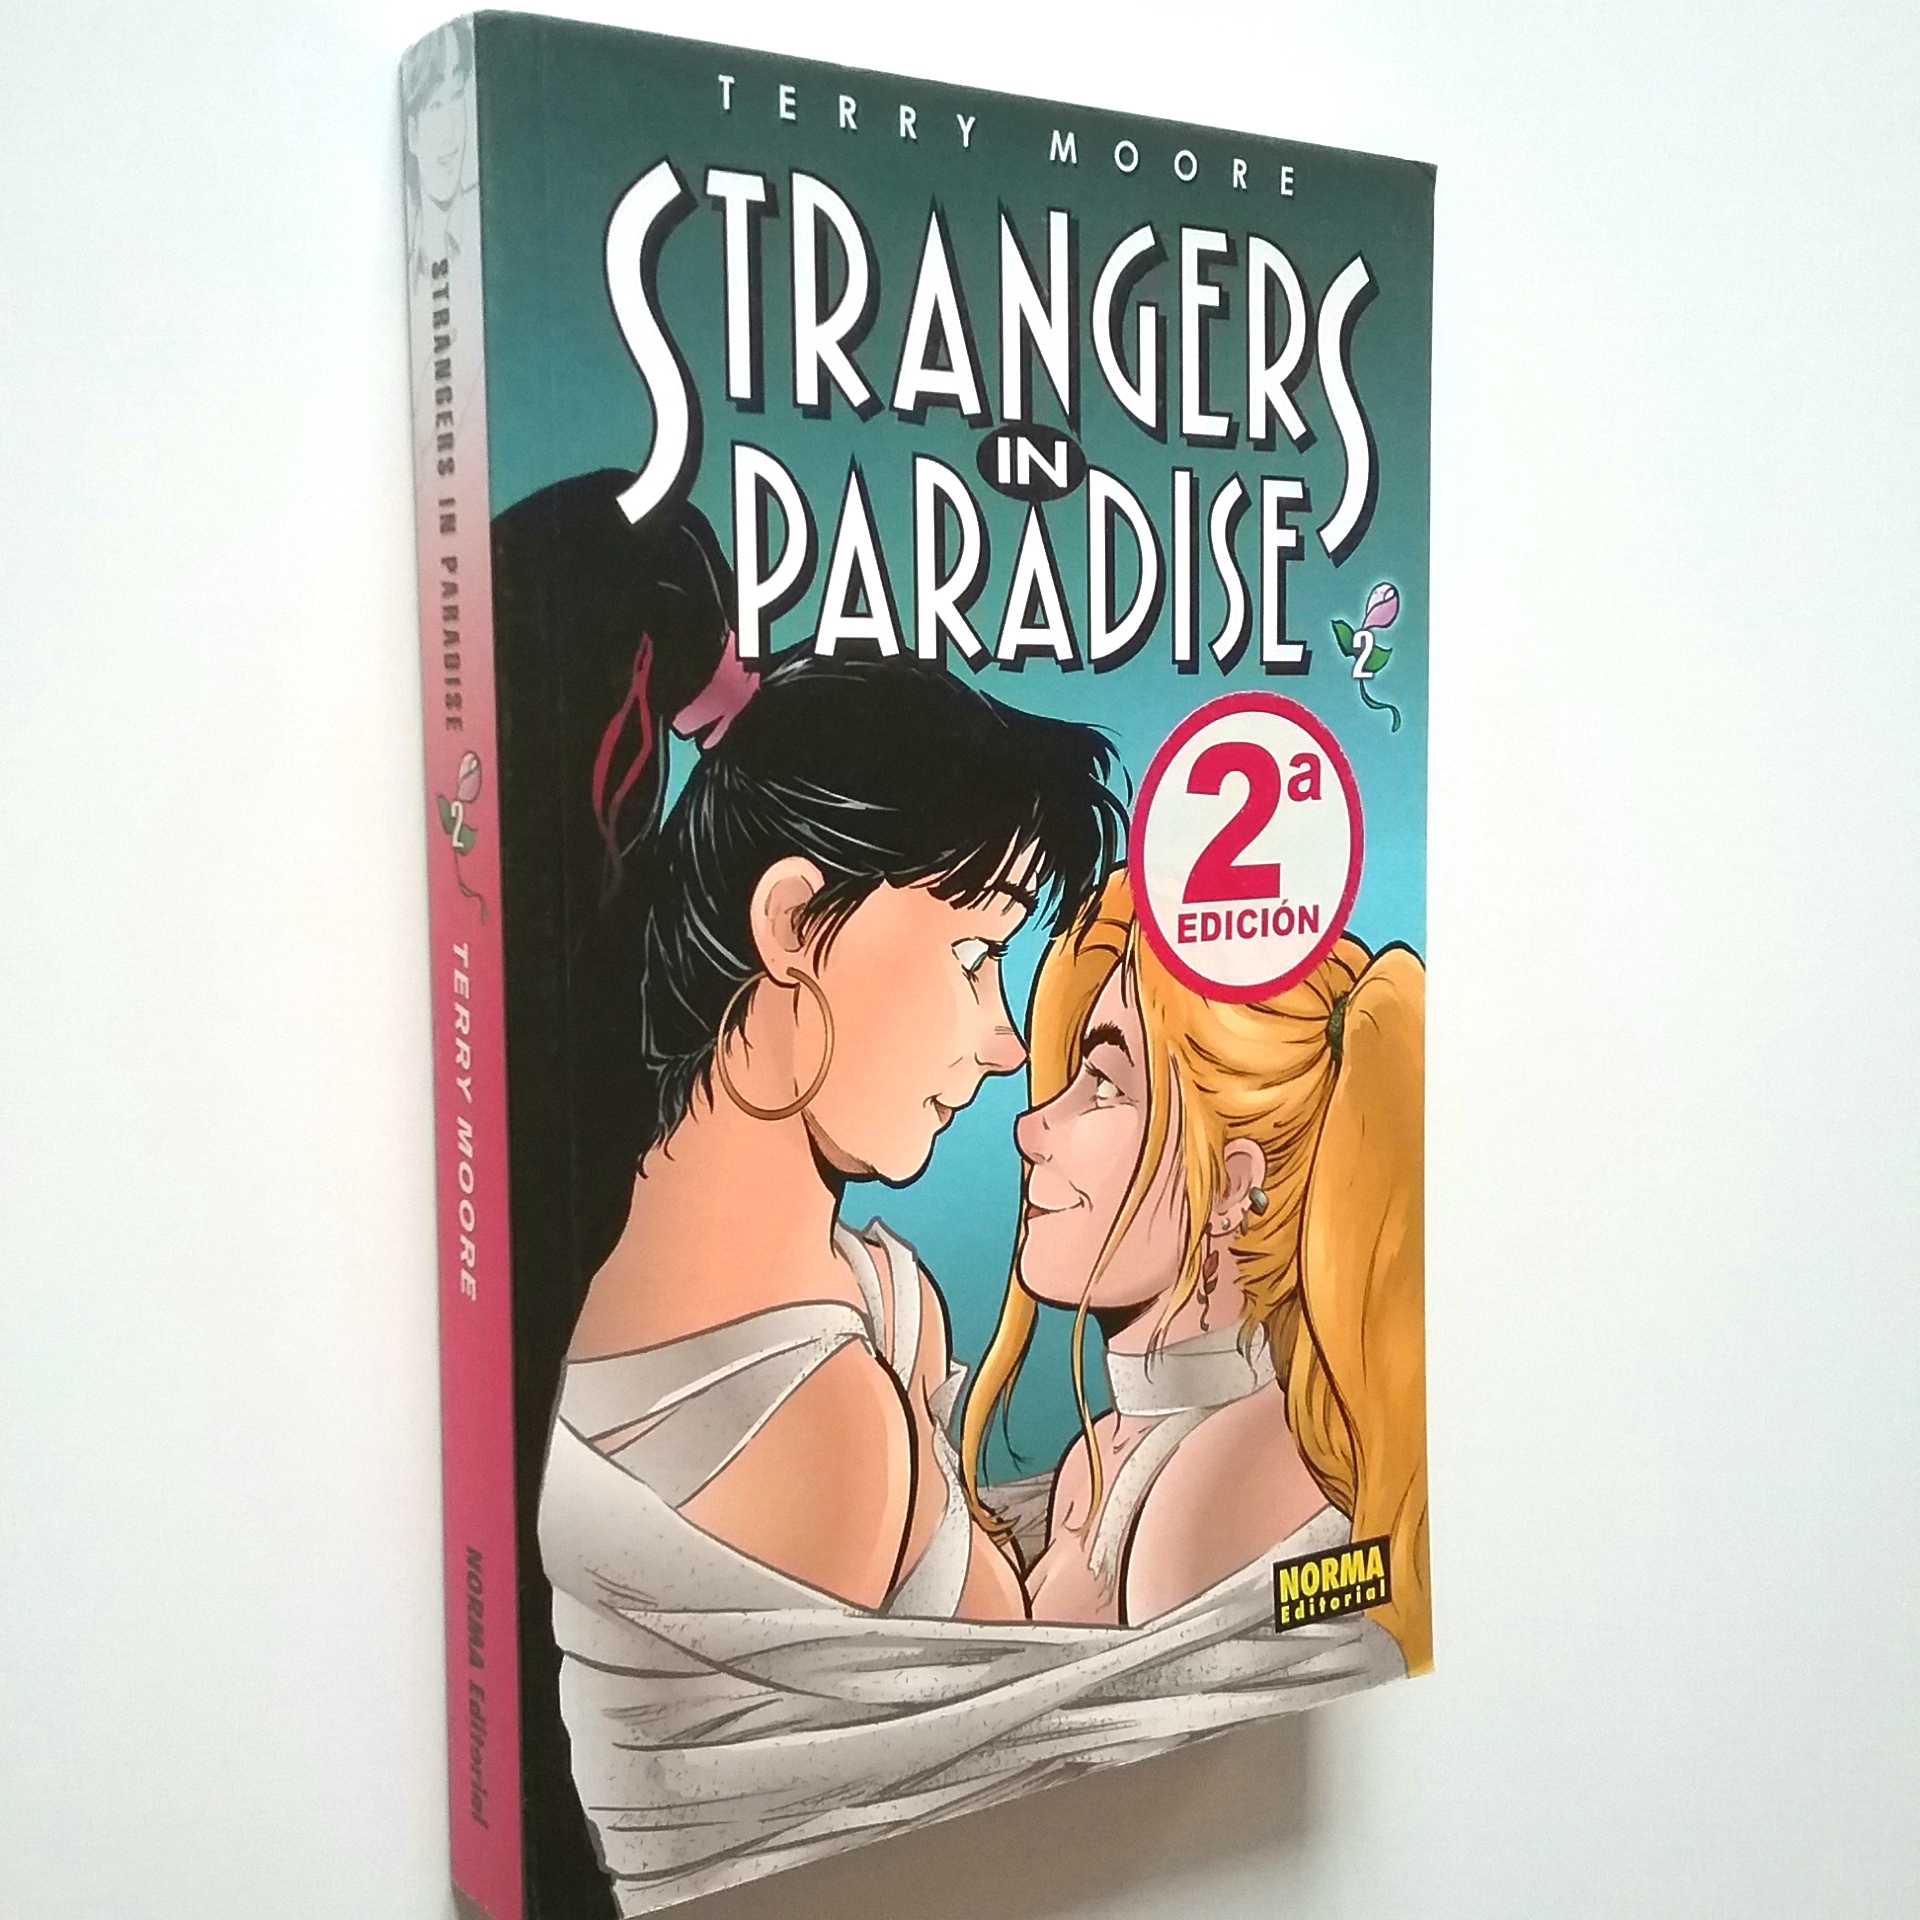 Strangers in paradise 2 (en español) - Terry Moore